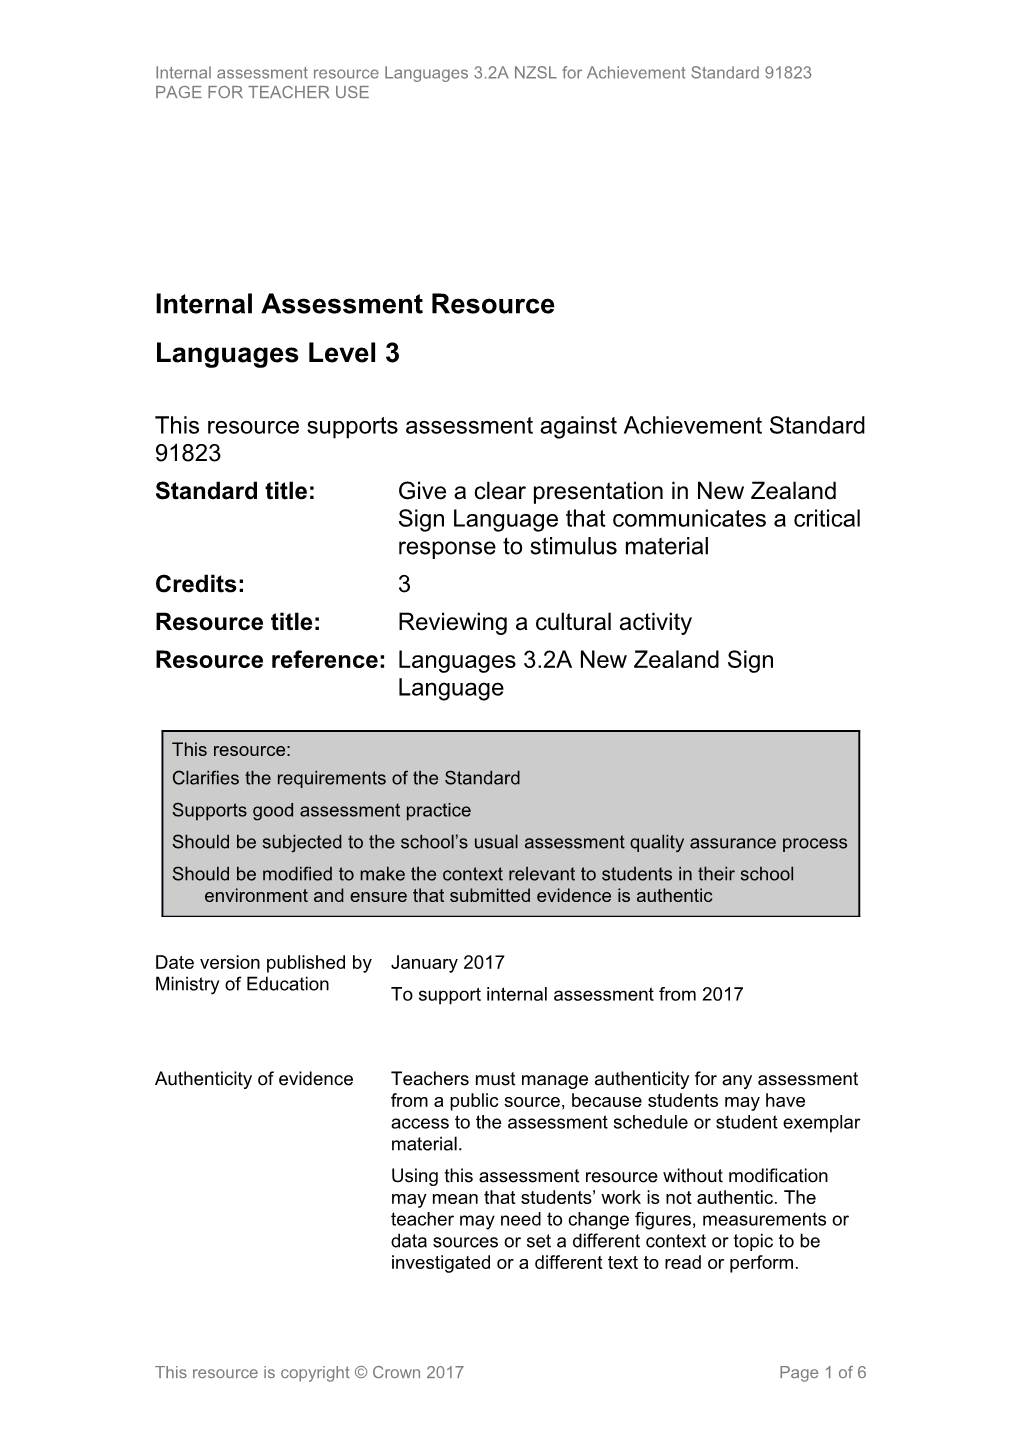 Level 3 NZSL Internal Assessment Resource